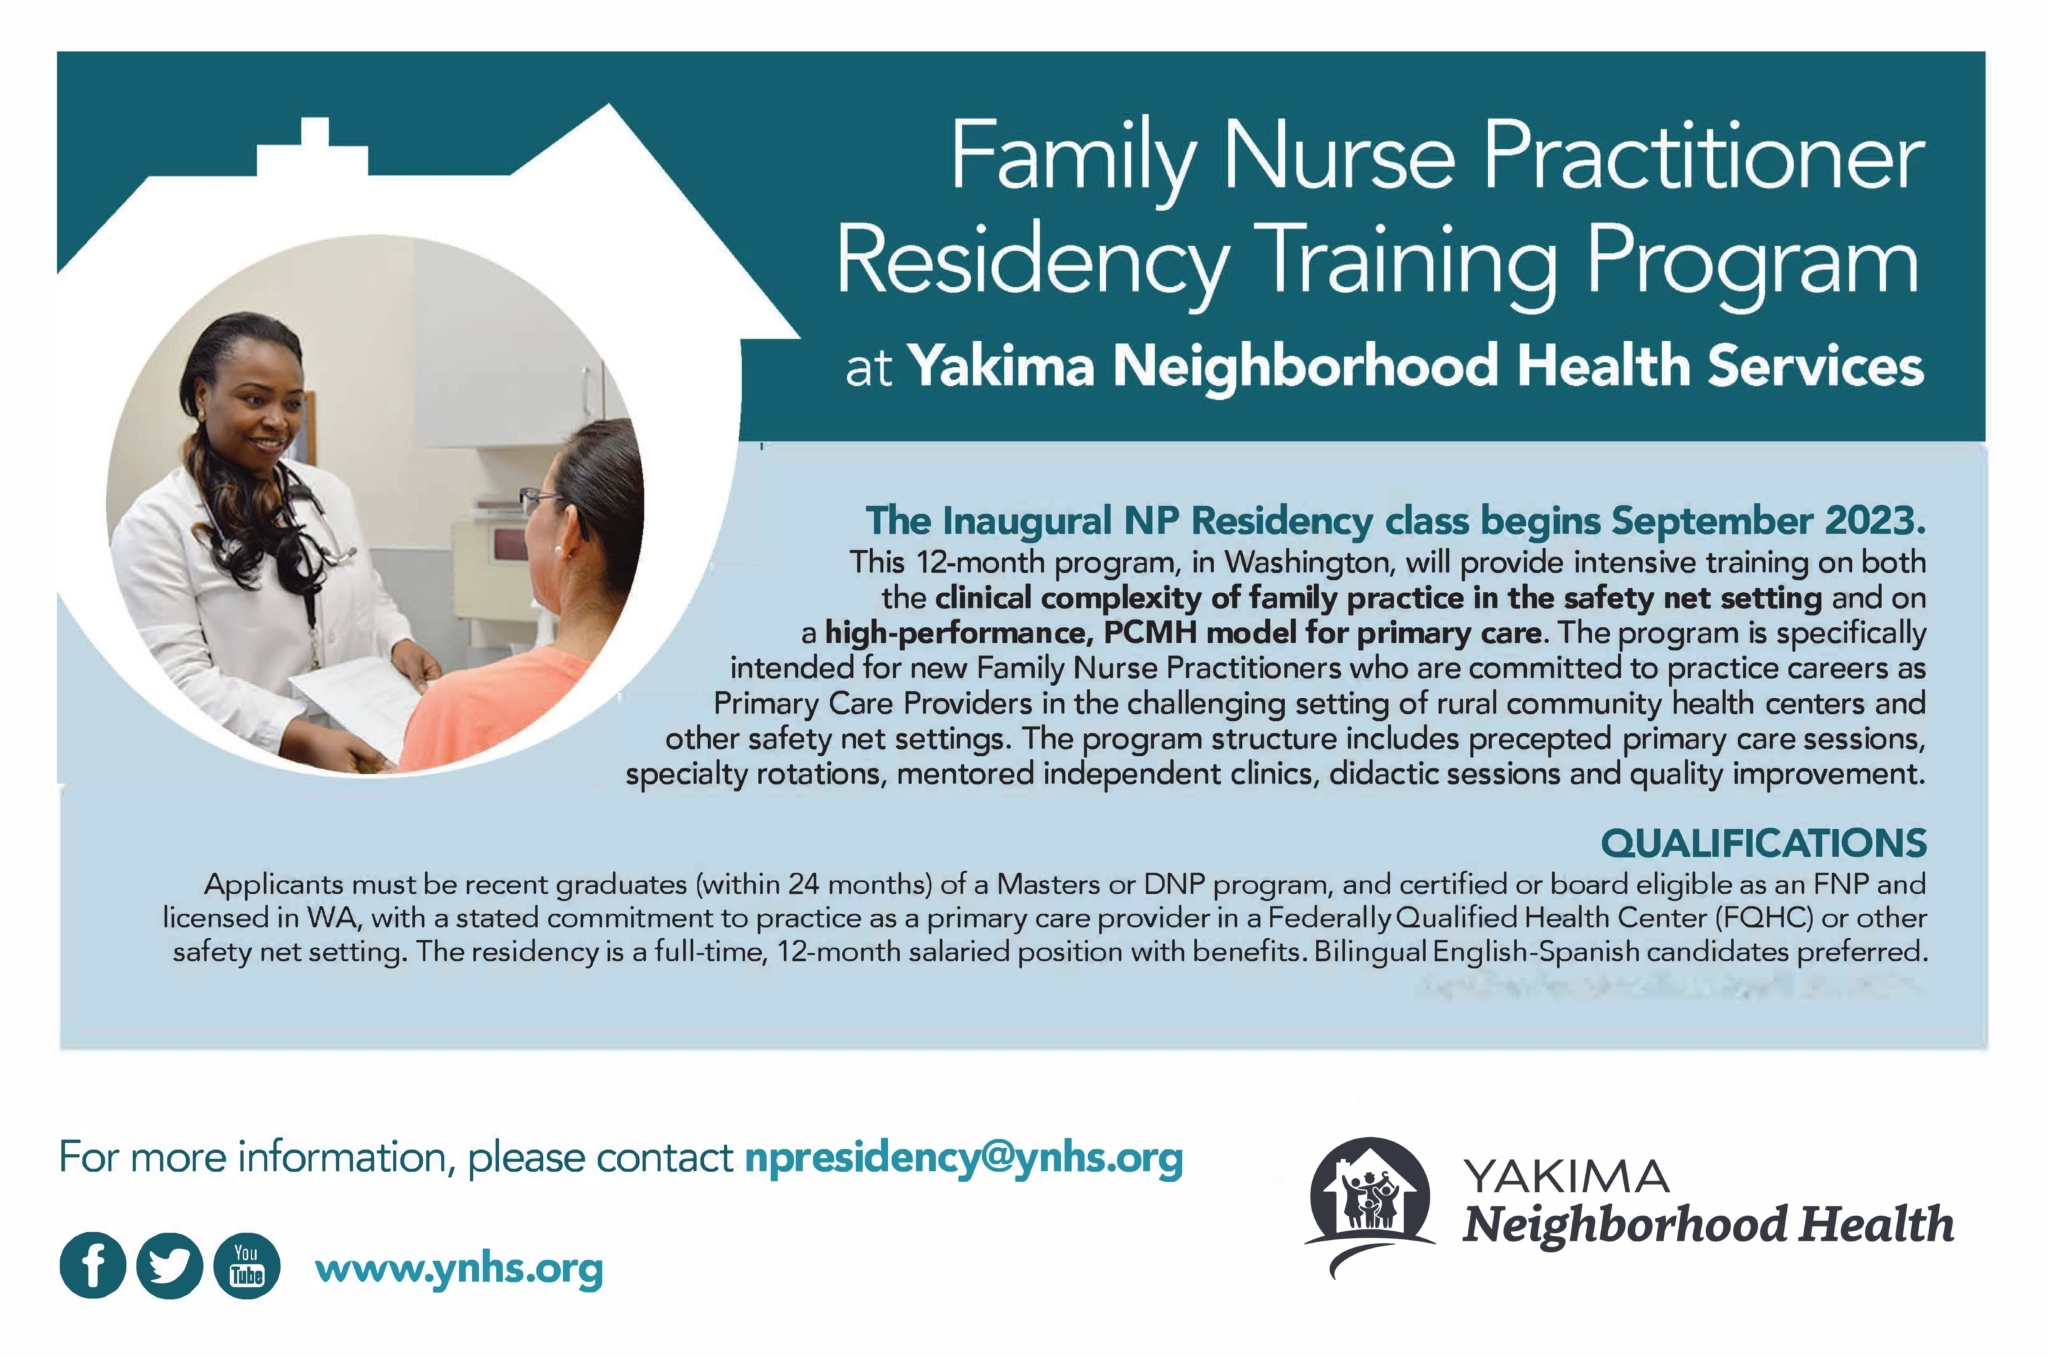 Application Deadline 2/17/23 for '23-'24 Nurse Practitioner Residency Program